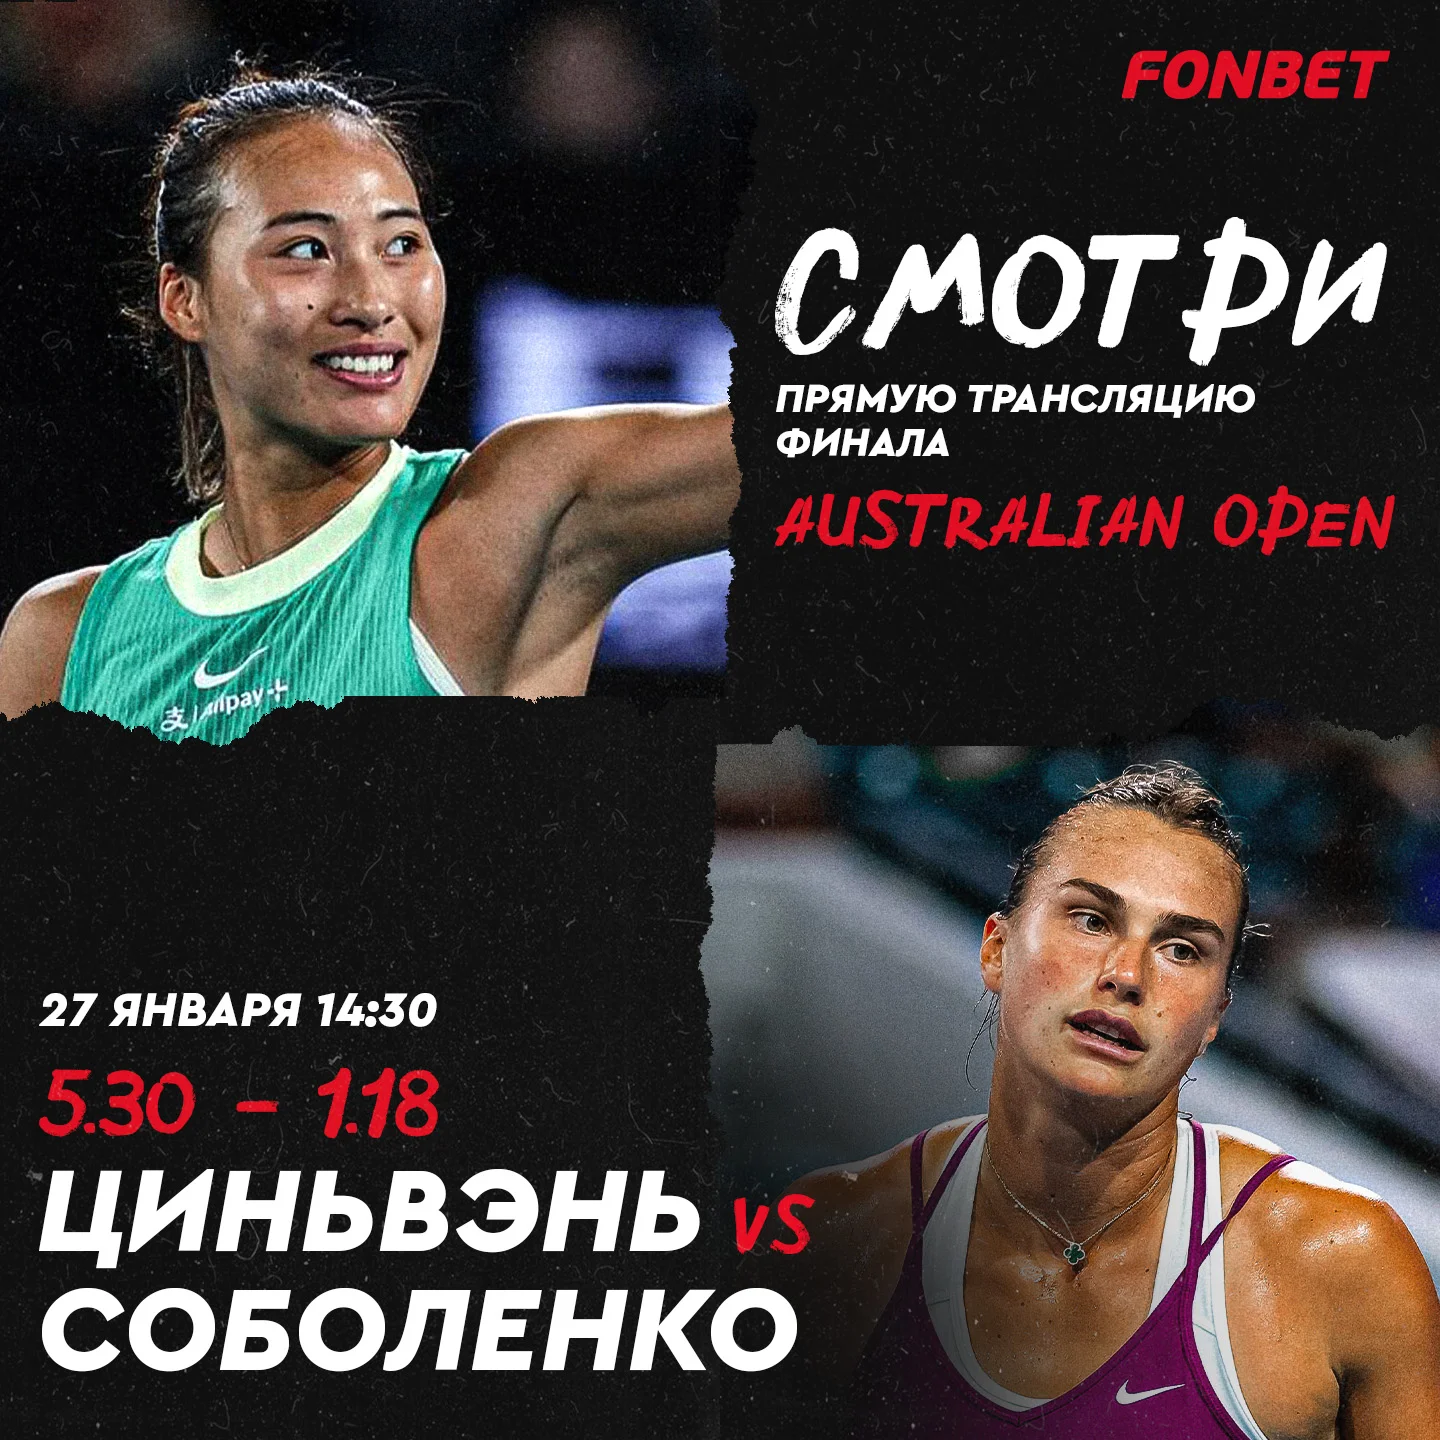 Соболенко – Чжэн: смотреть онлайн, прямая трансляция финала Australian Open в Казахстане